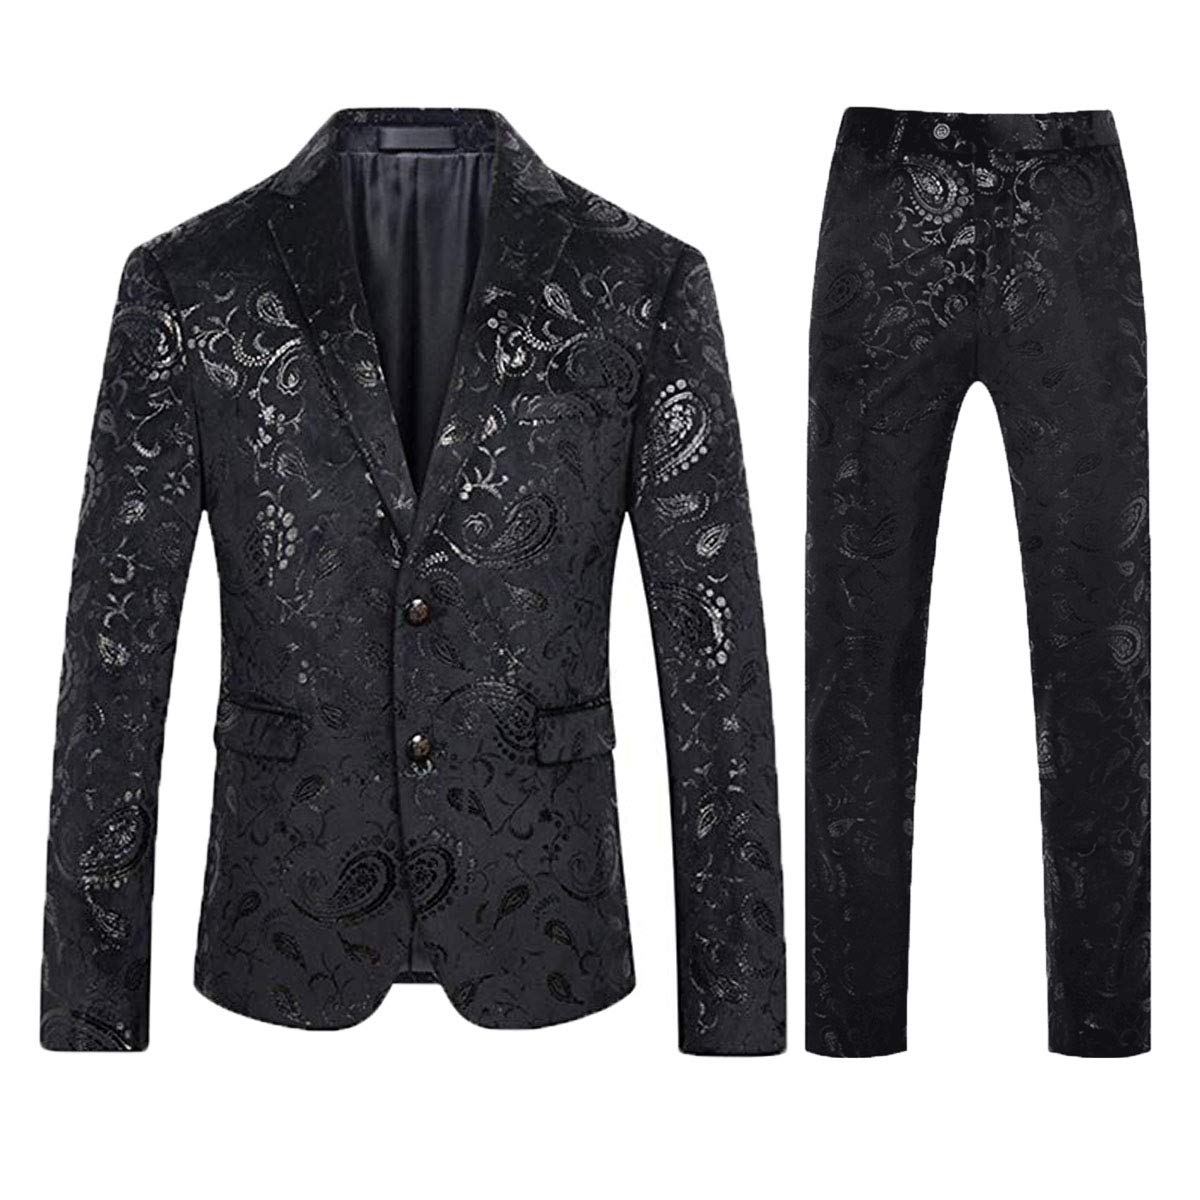 2-Piece Slim Fit Floral Suit Black